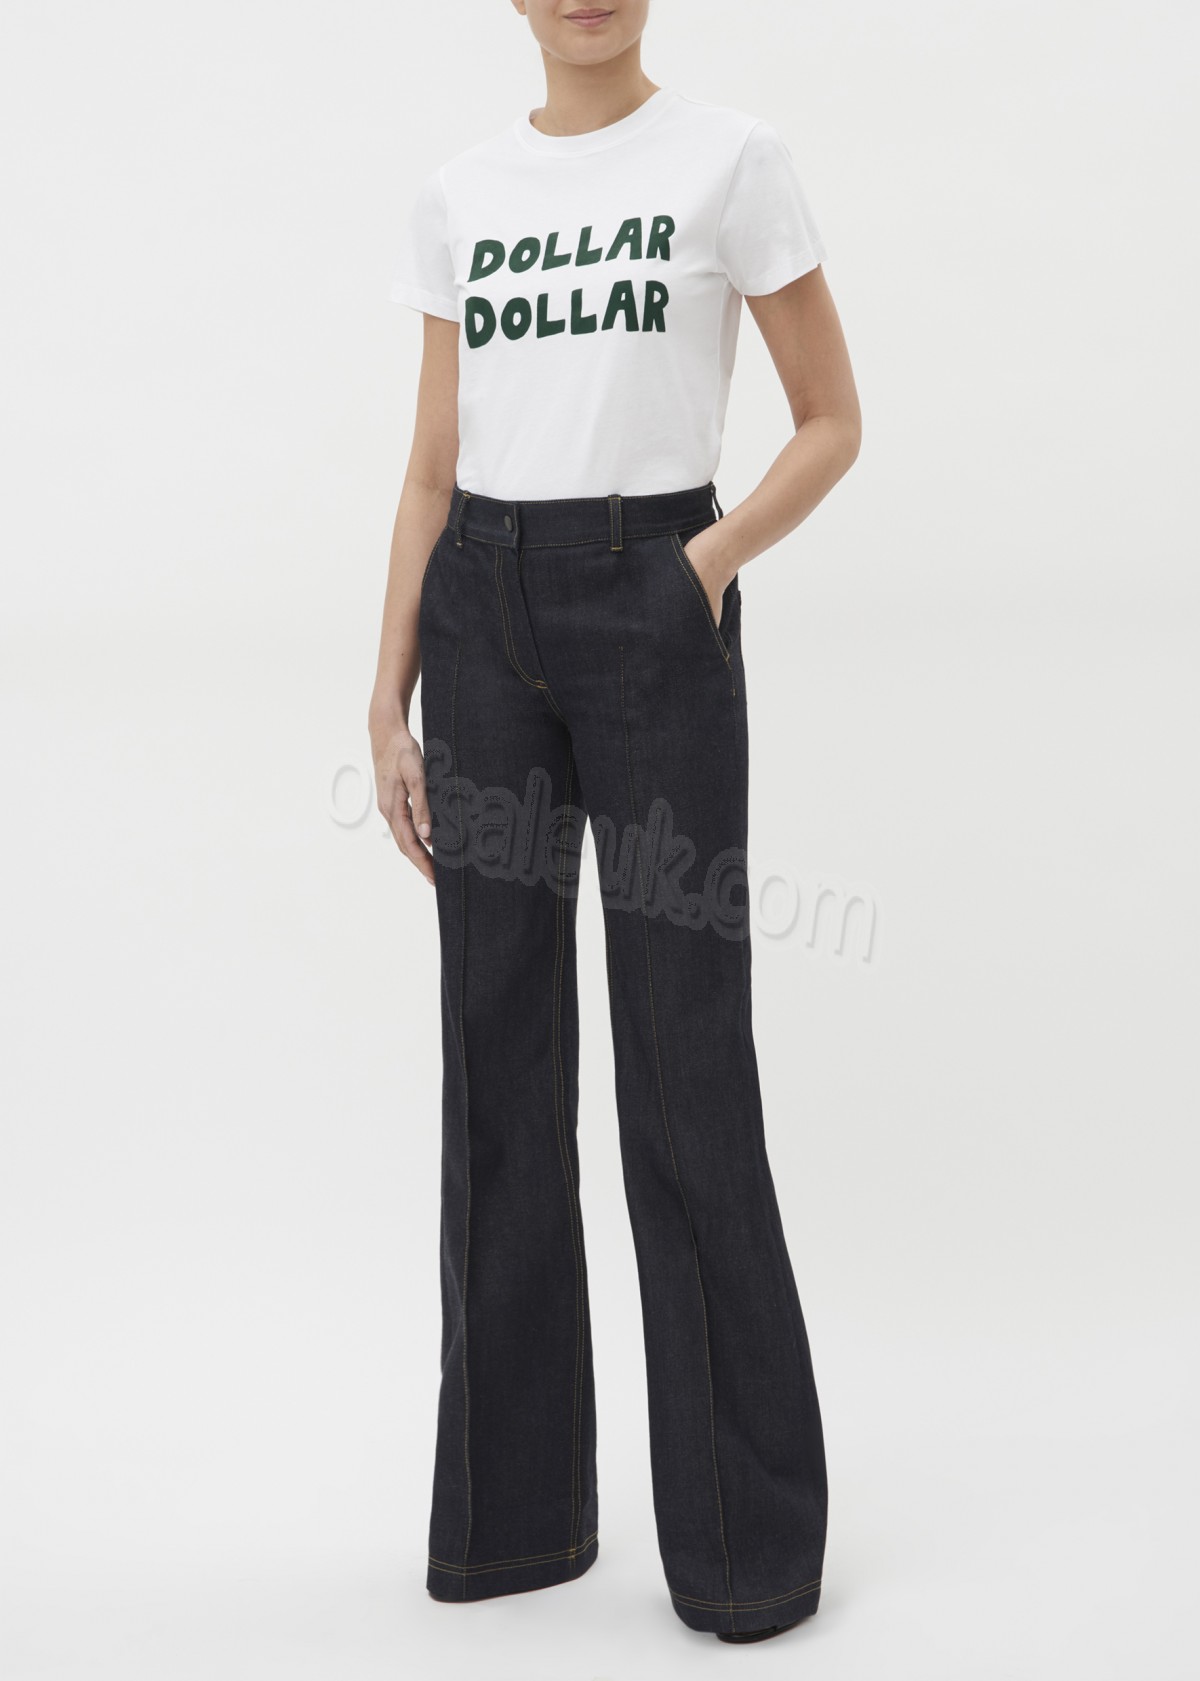 Bella Freud Dollar Dollar T-Shirt - -1